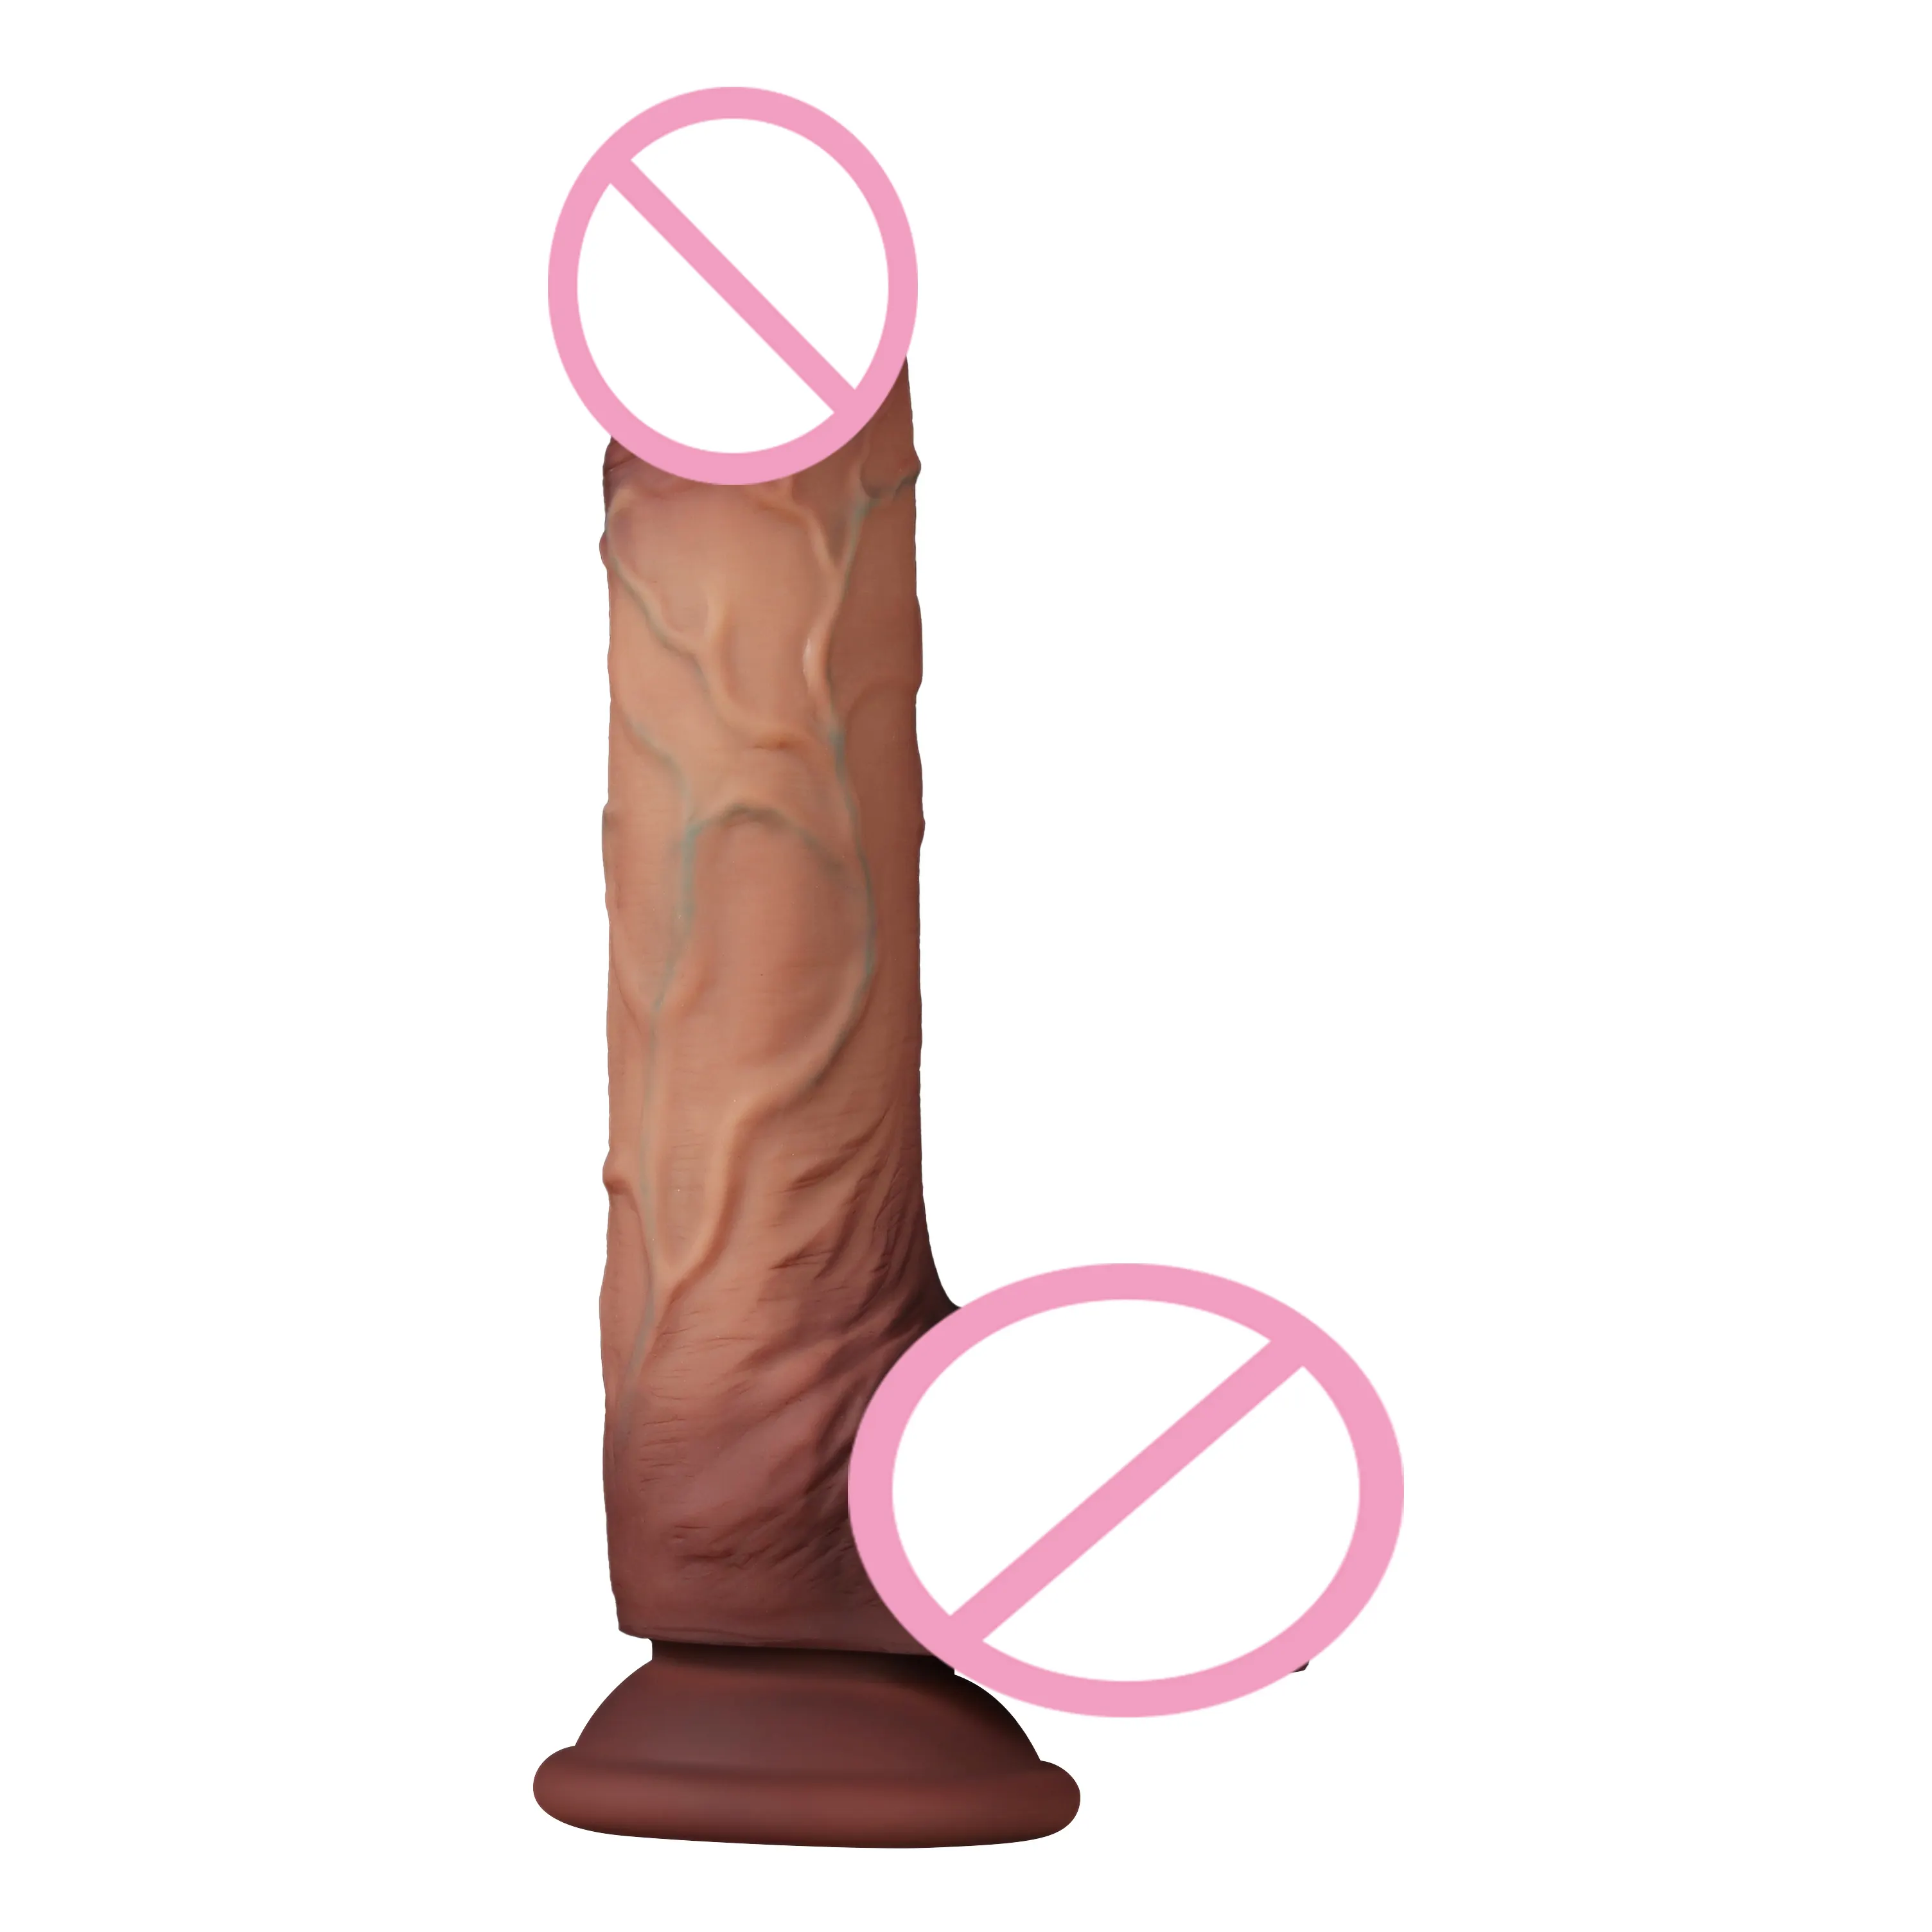 Hochwertiger großformatiger doppelschichtiger dildo neues sexy spielzeug für männer und frauen flüssiges silikon echtes sexspielzeug künstliche vagina